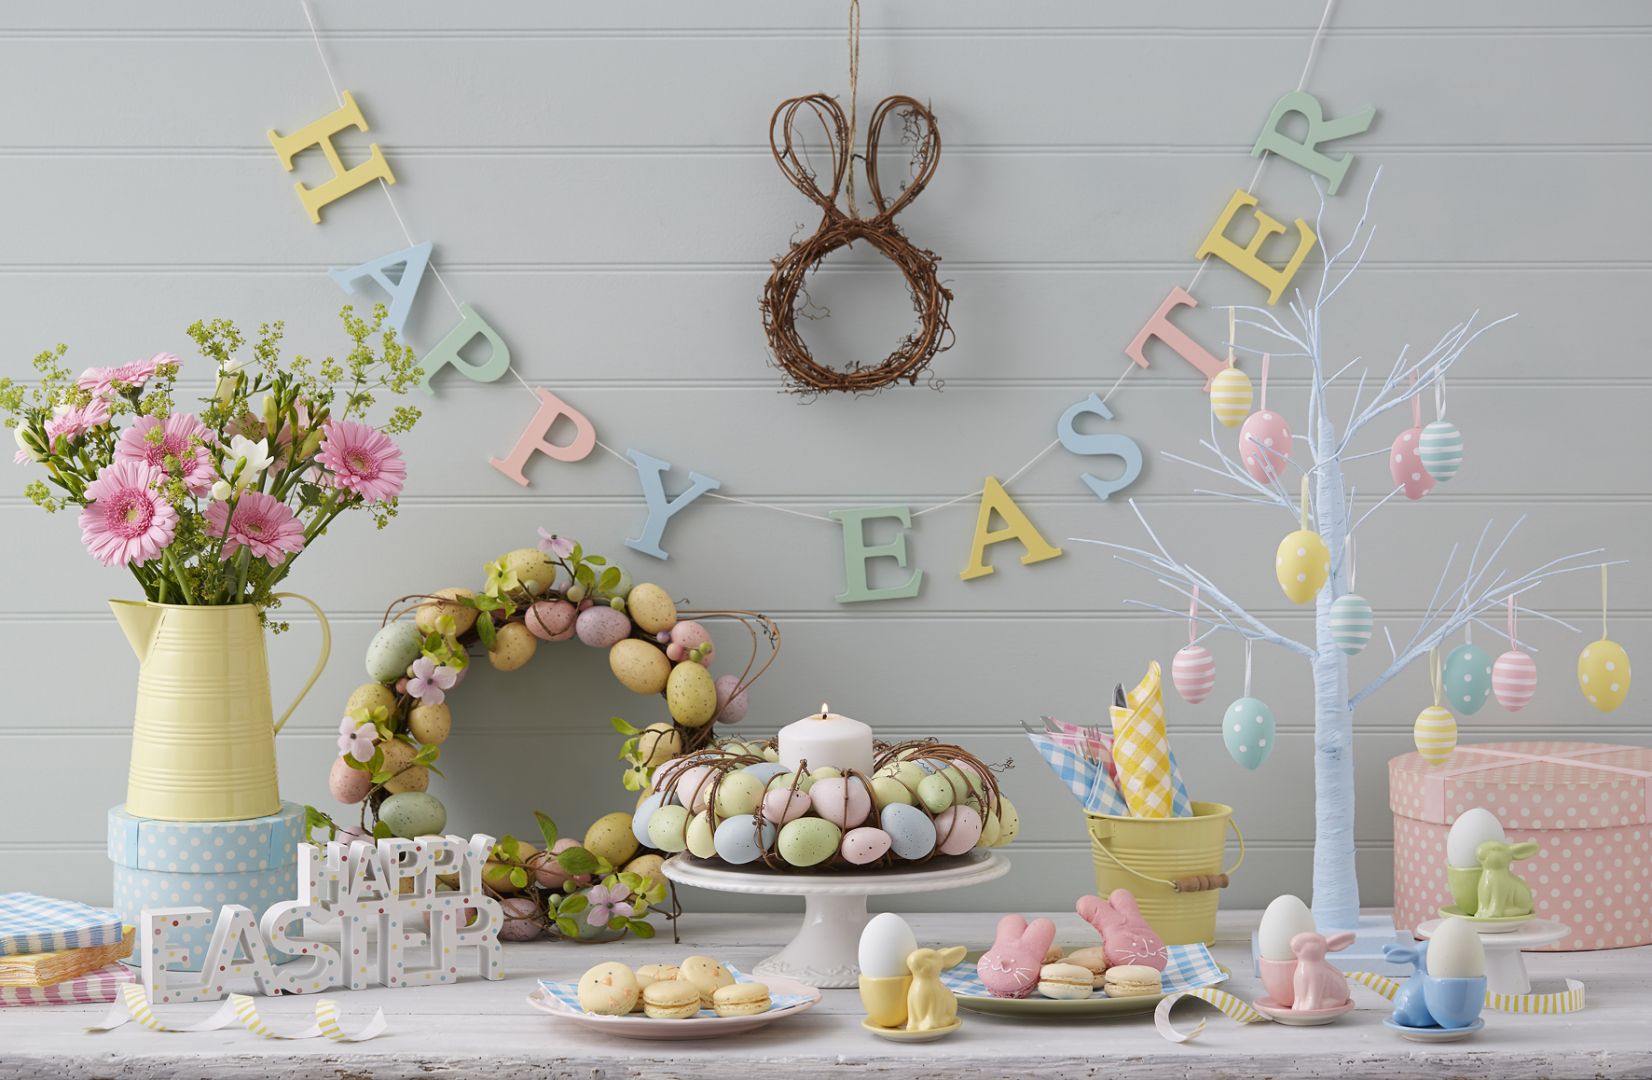 Bawmy się ozdobami w dowolny sposób, a dekoracja stołu na Wielkanoc niech sprawi nam wiele radości. Fot. Kahla 